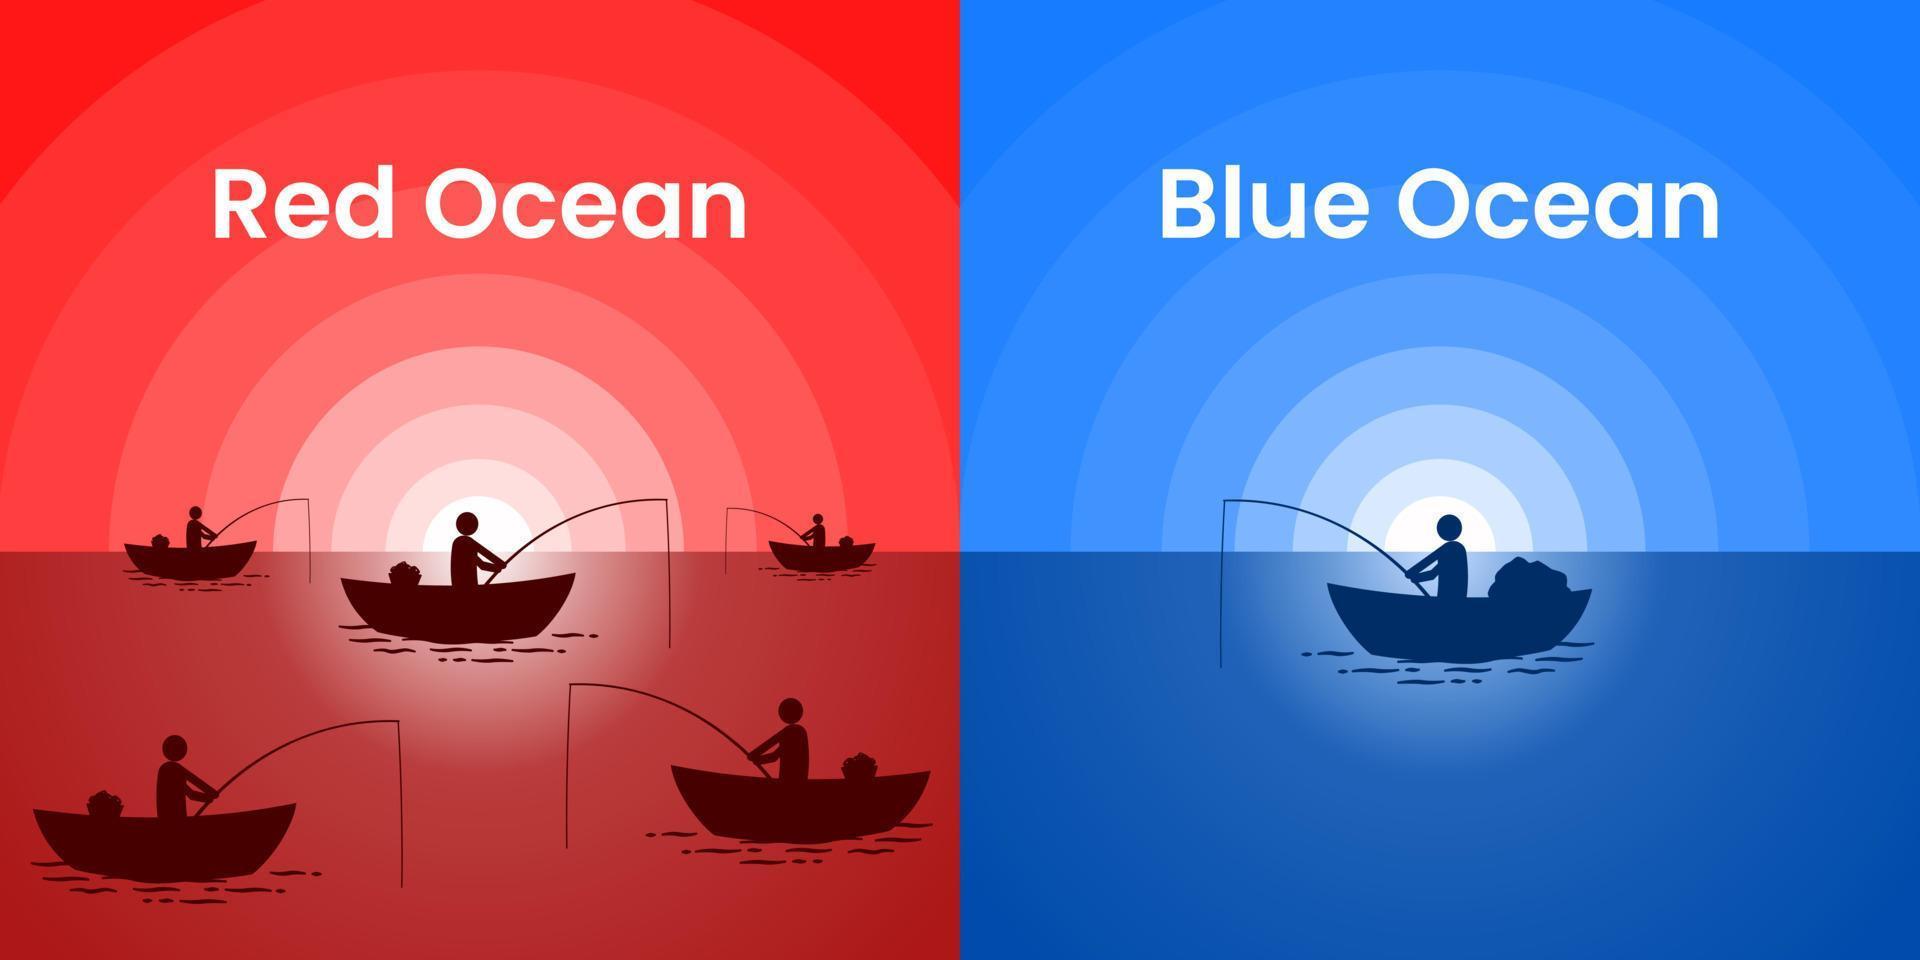 Oceano azul e oceano vermelho: entenda as diferenças